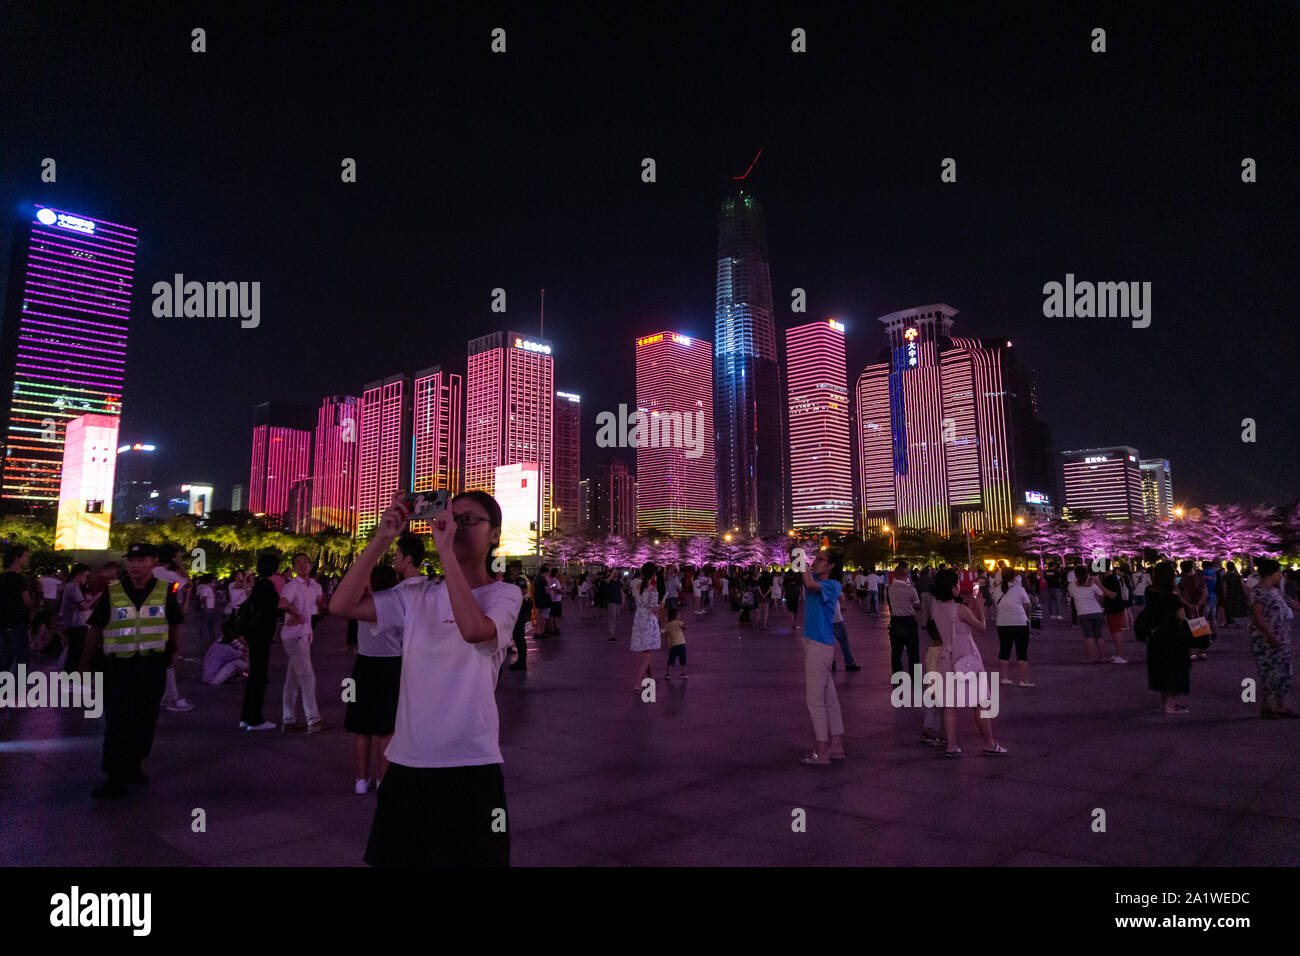 Chine 70e anniversaire spectacle de lumière nuit paysage urbain ville chinoise Banque D'Images